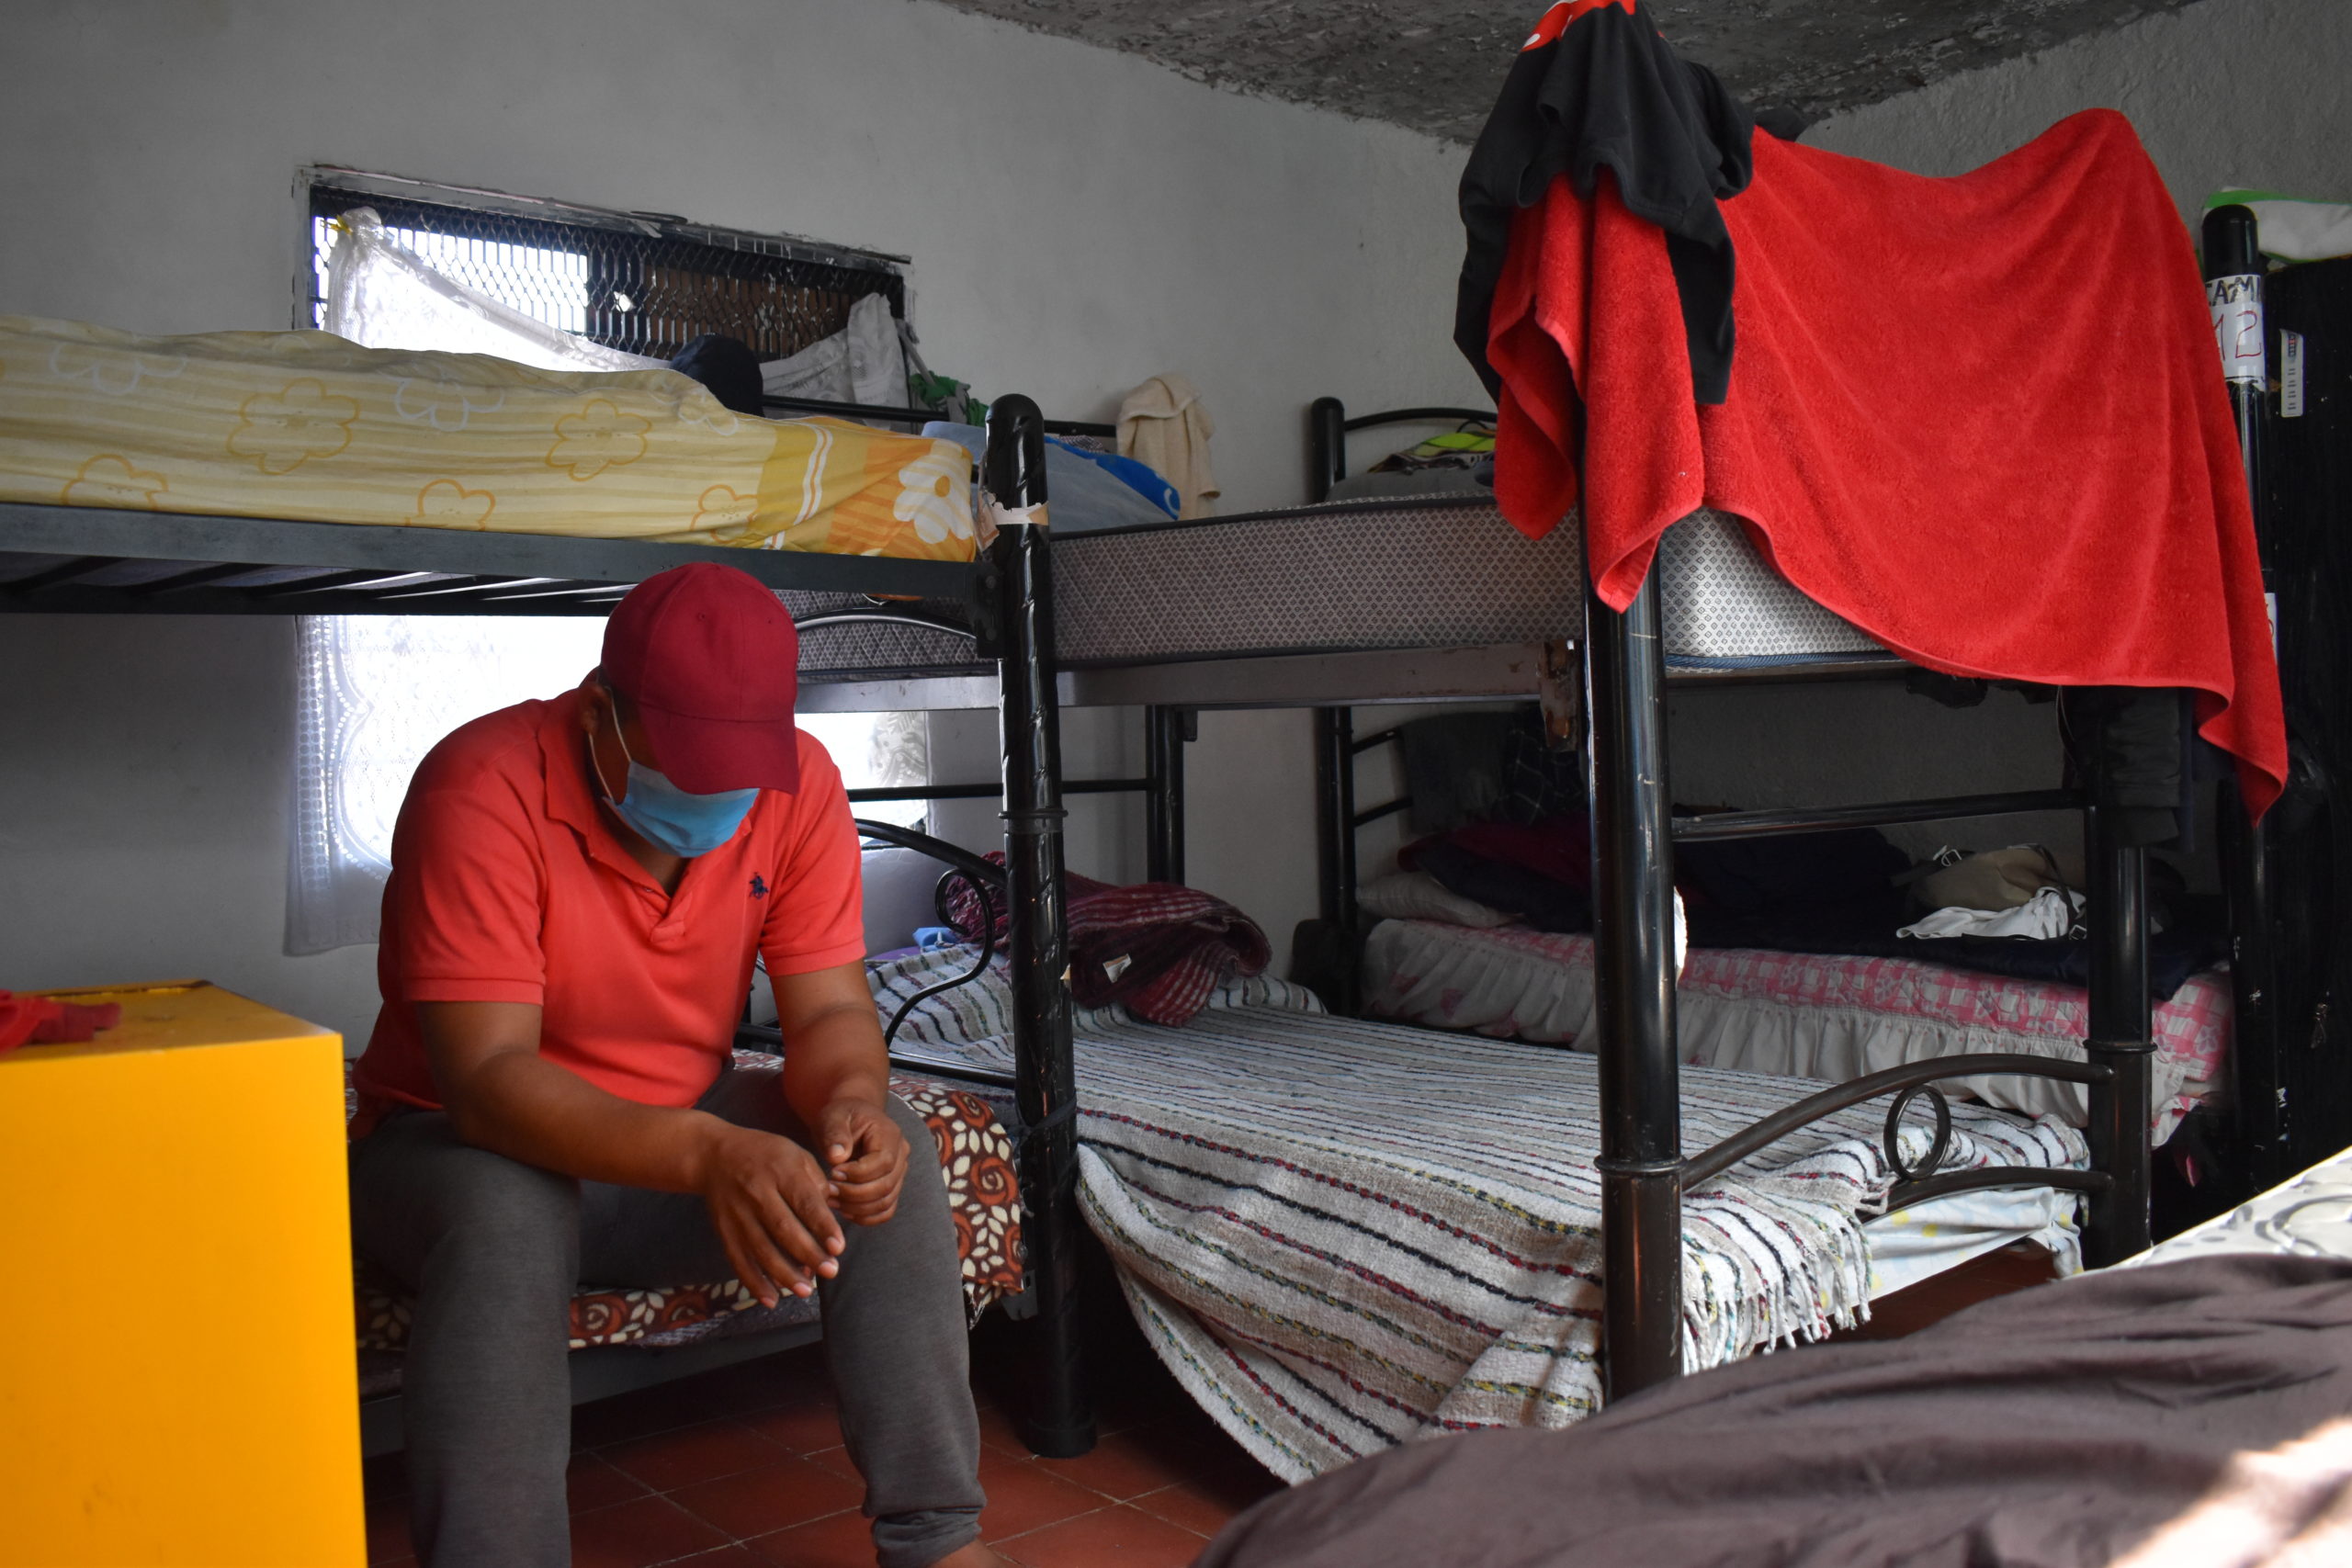 Las habitaciones de Casa Tochán han estado al límite de su capacidad durante las últimas semanas. Debido a las restricciones por la pandemia, los habitantes tienen que portar cubrebocas casi en todo momento. | Foto: Emilio Almaraz / Conexión Migrante.